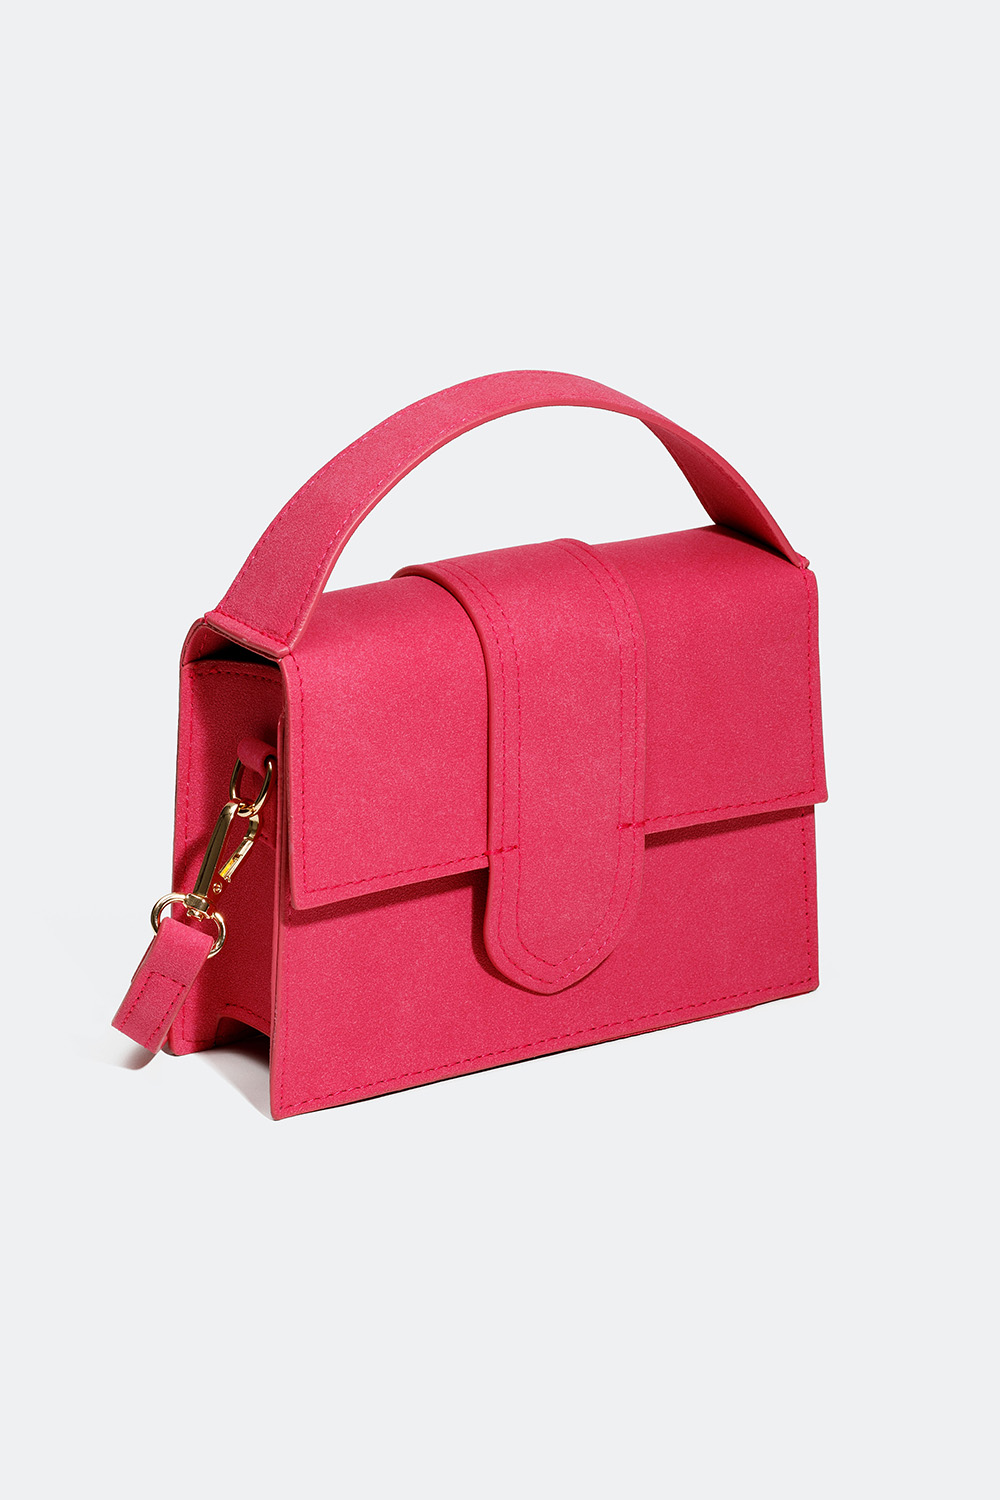 Vaaleanpunainen käsilaukku mokkajäljitelmää ja jossa olkahihna ryhmässä Laukut / Olkalaukut @ Glitter (172000765500)